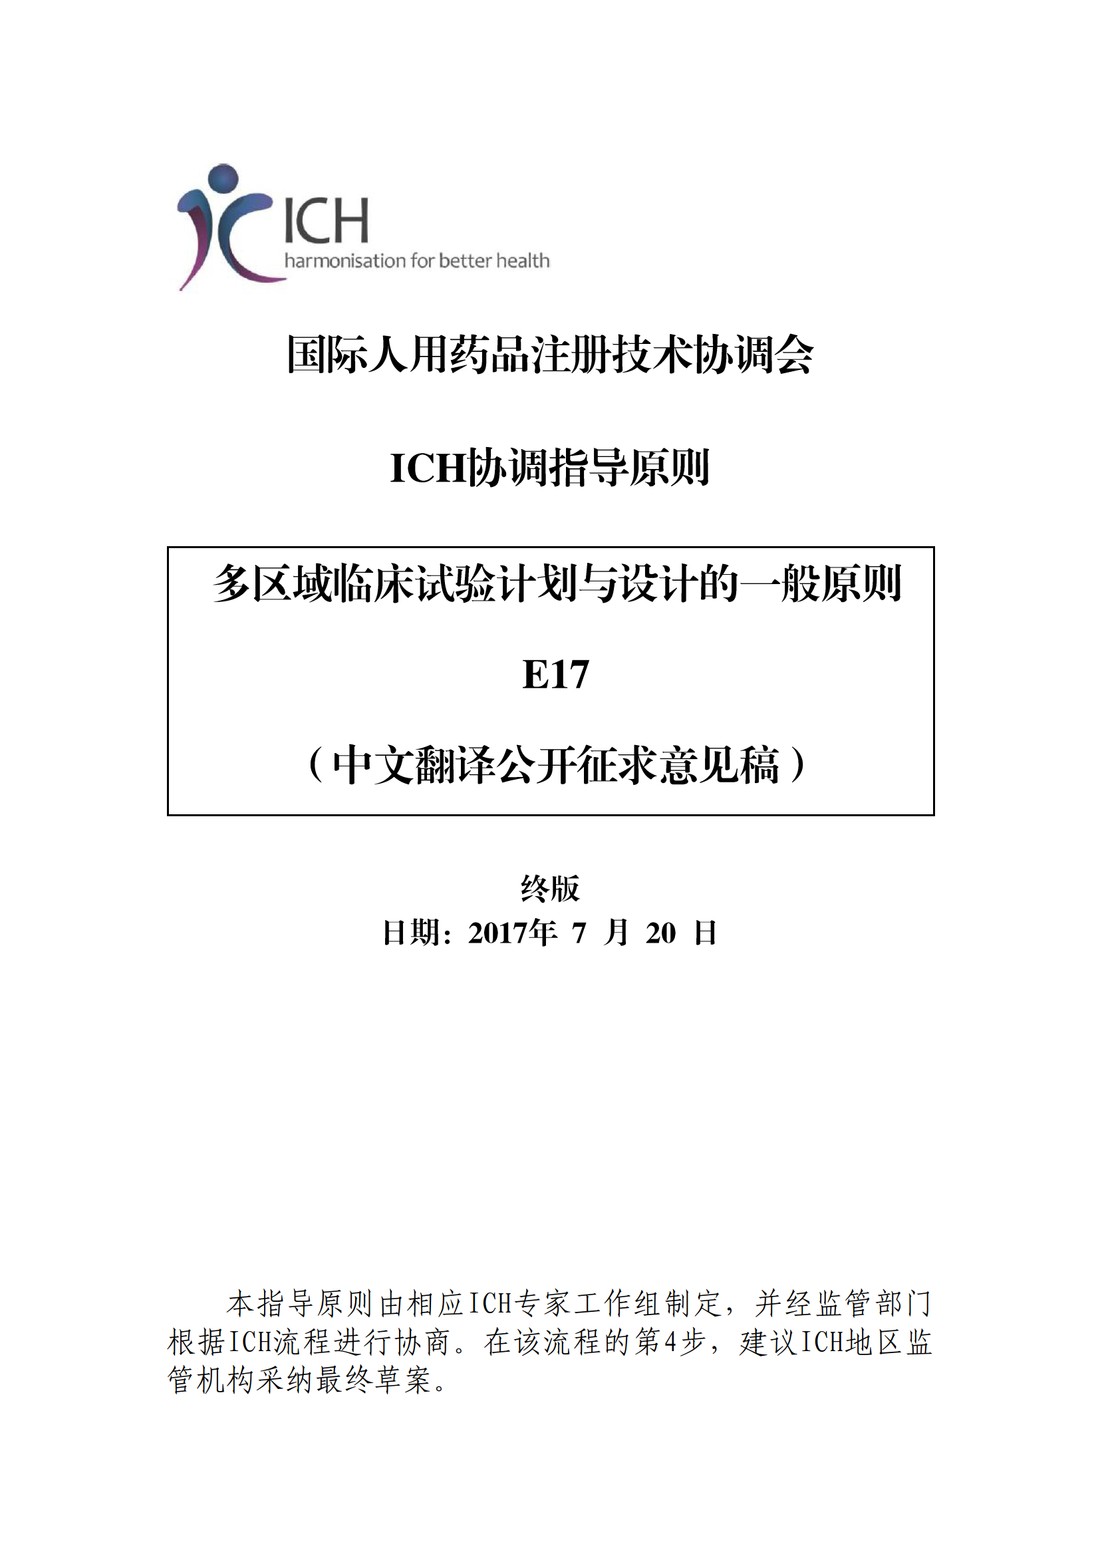 E17多区域临床试验计划与设计的一般原则（中文翻译公开征求意见稿）_01.jpg